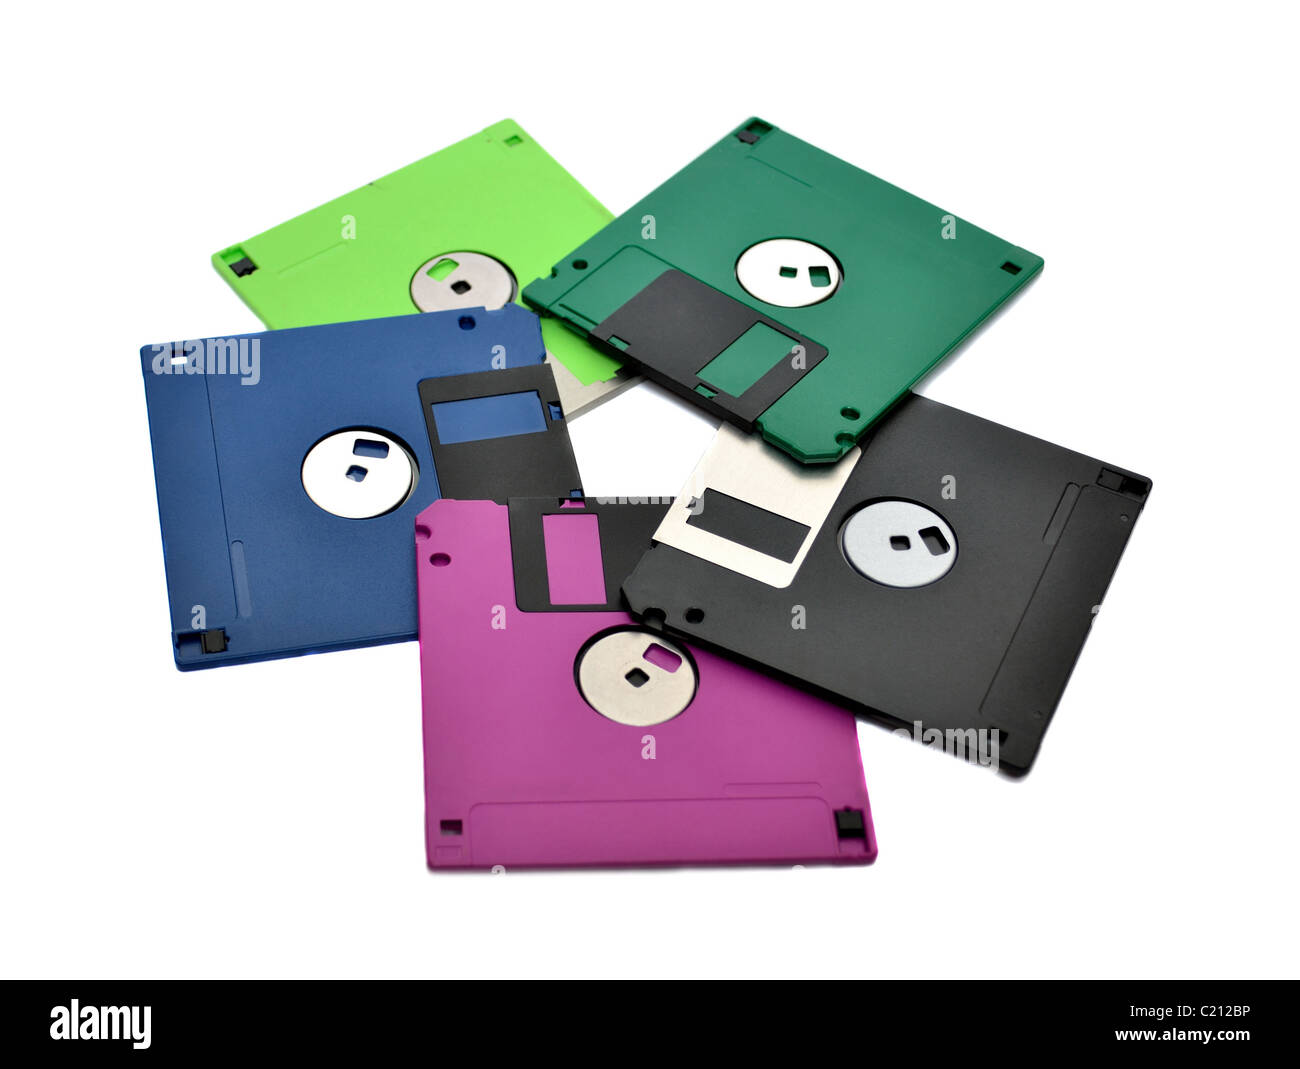 Floppy diskettes Stock Photo